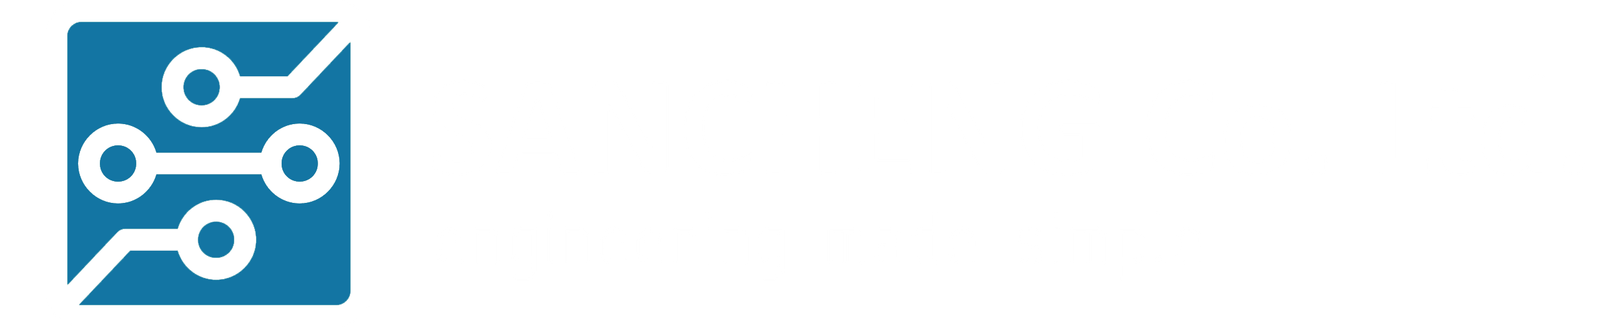 Sancheng Software Development